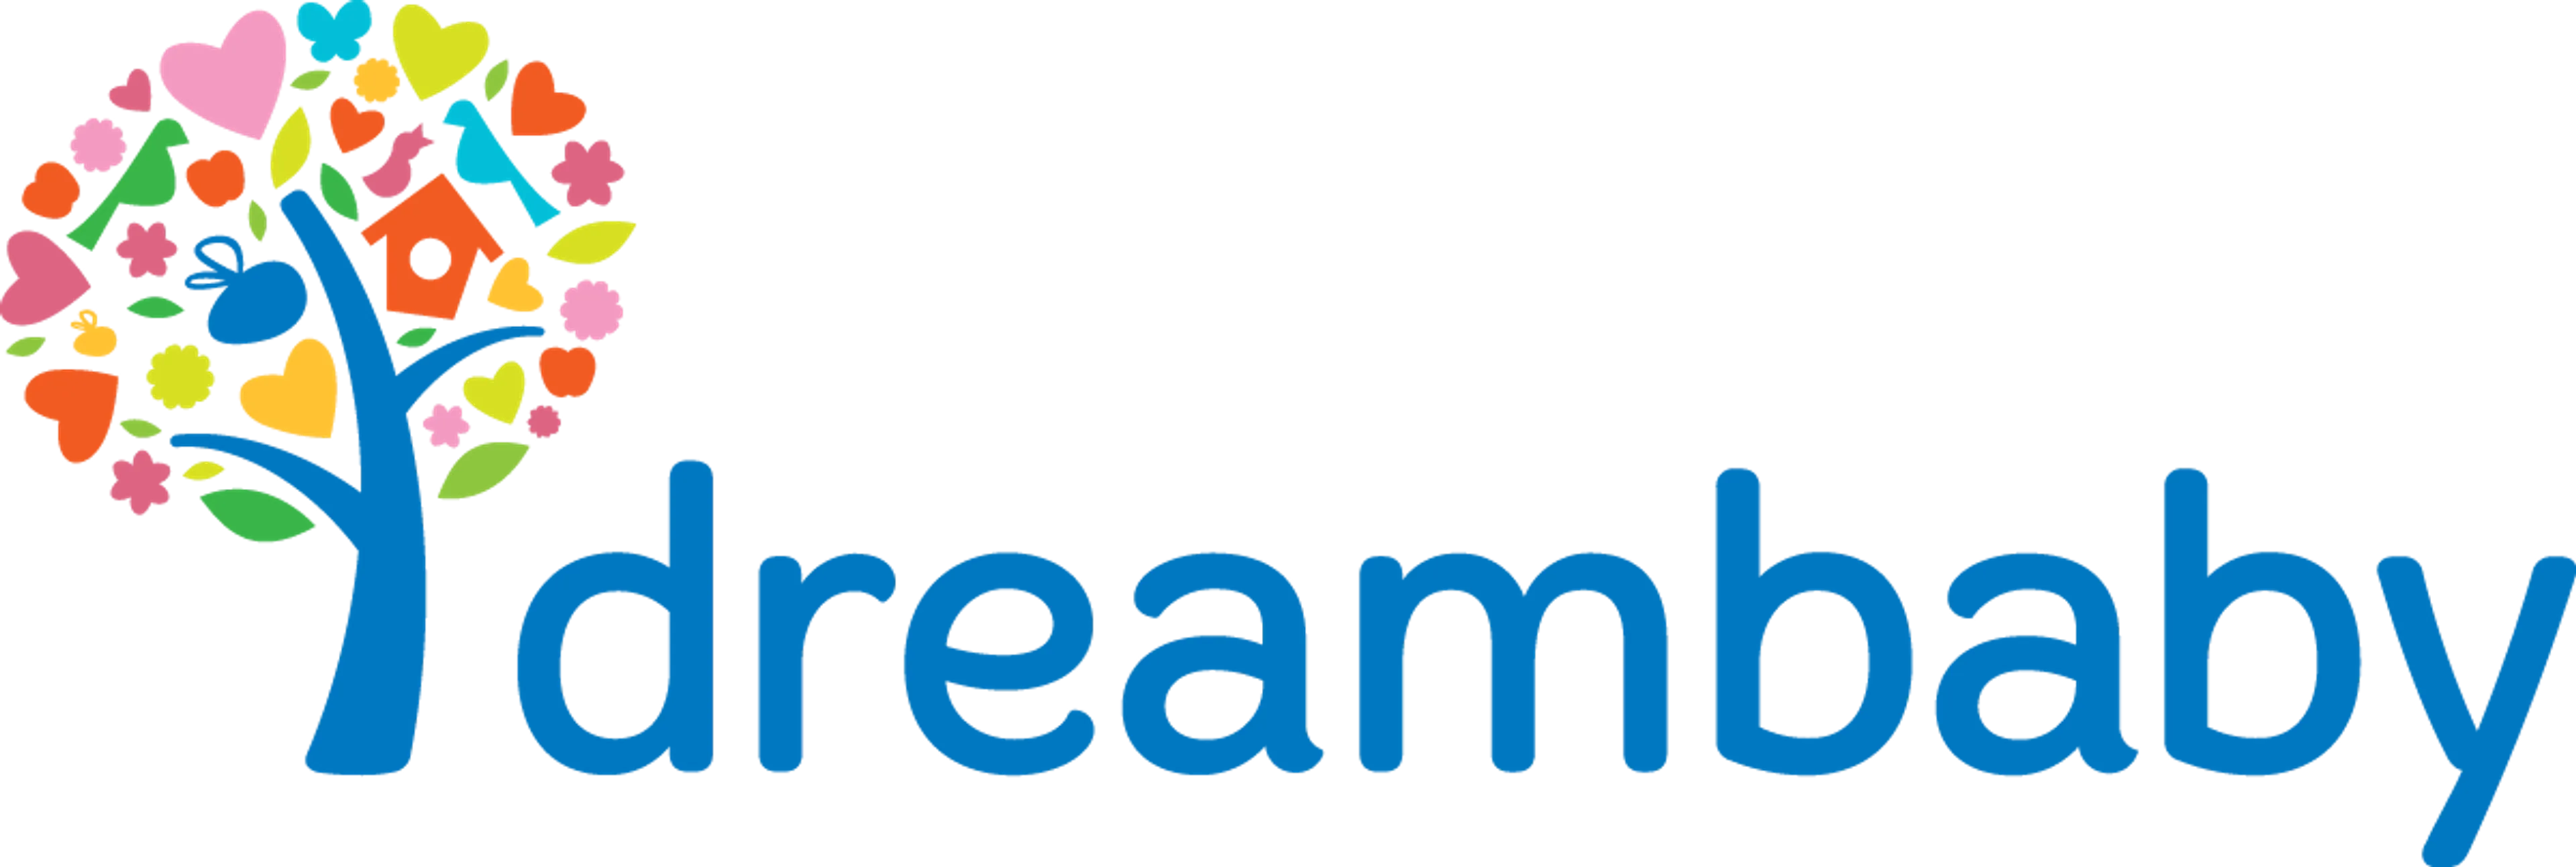 DREAMBABY logo